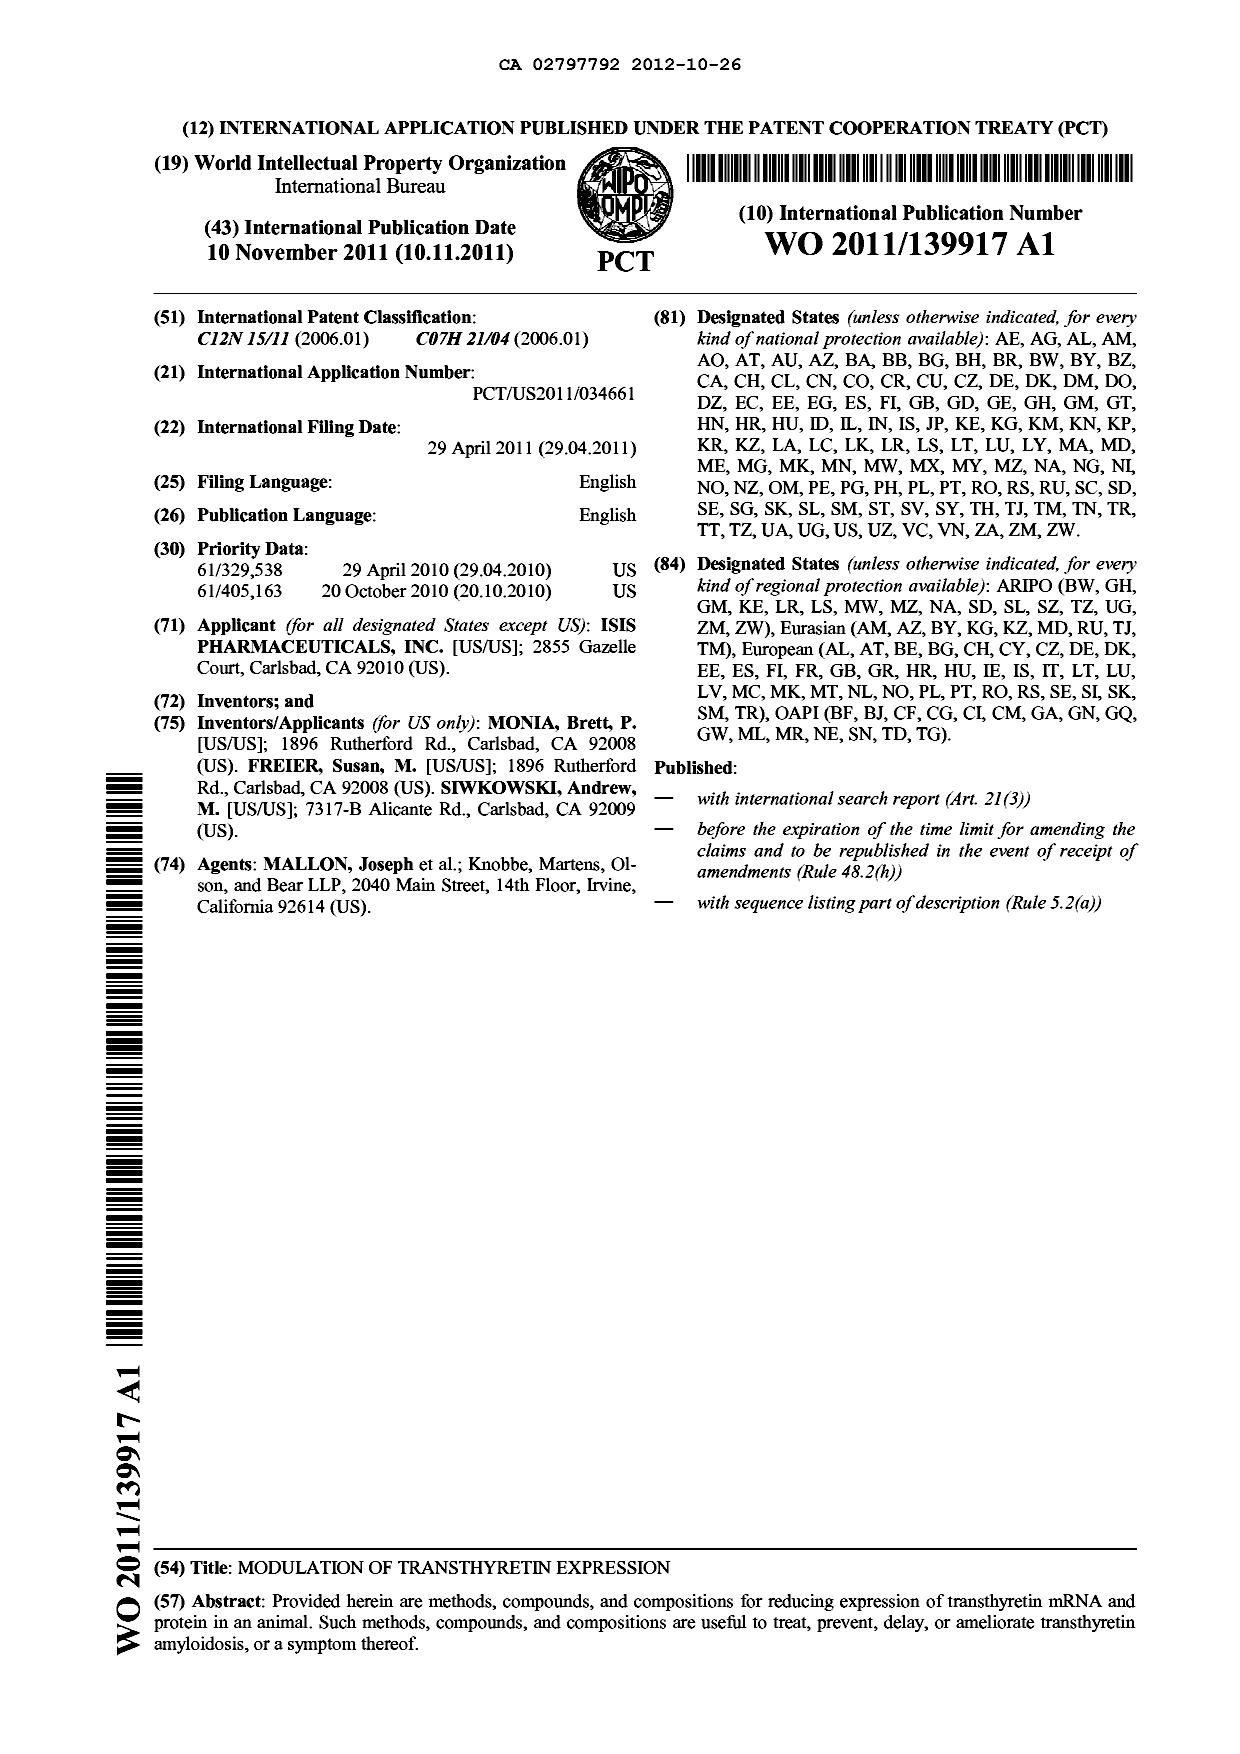 Document de brevet canadien 2797792. Abrégé 20121026. Image 1 de 1